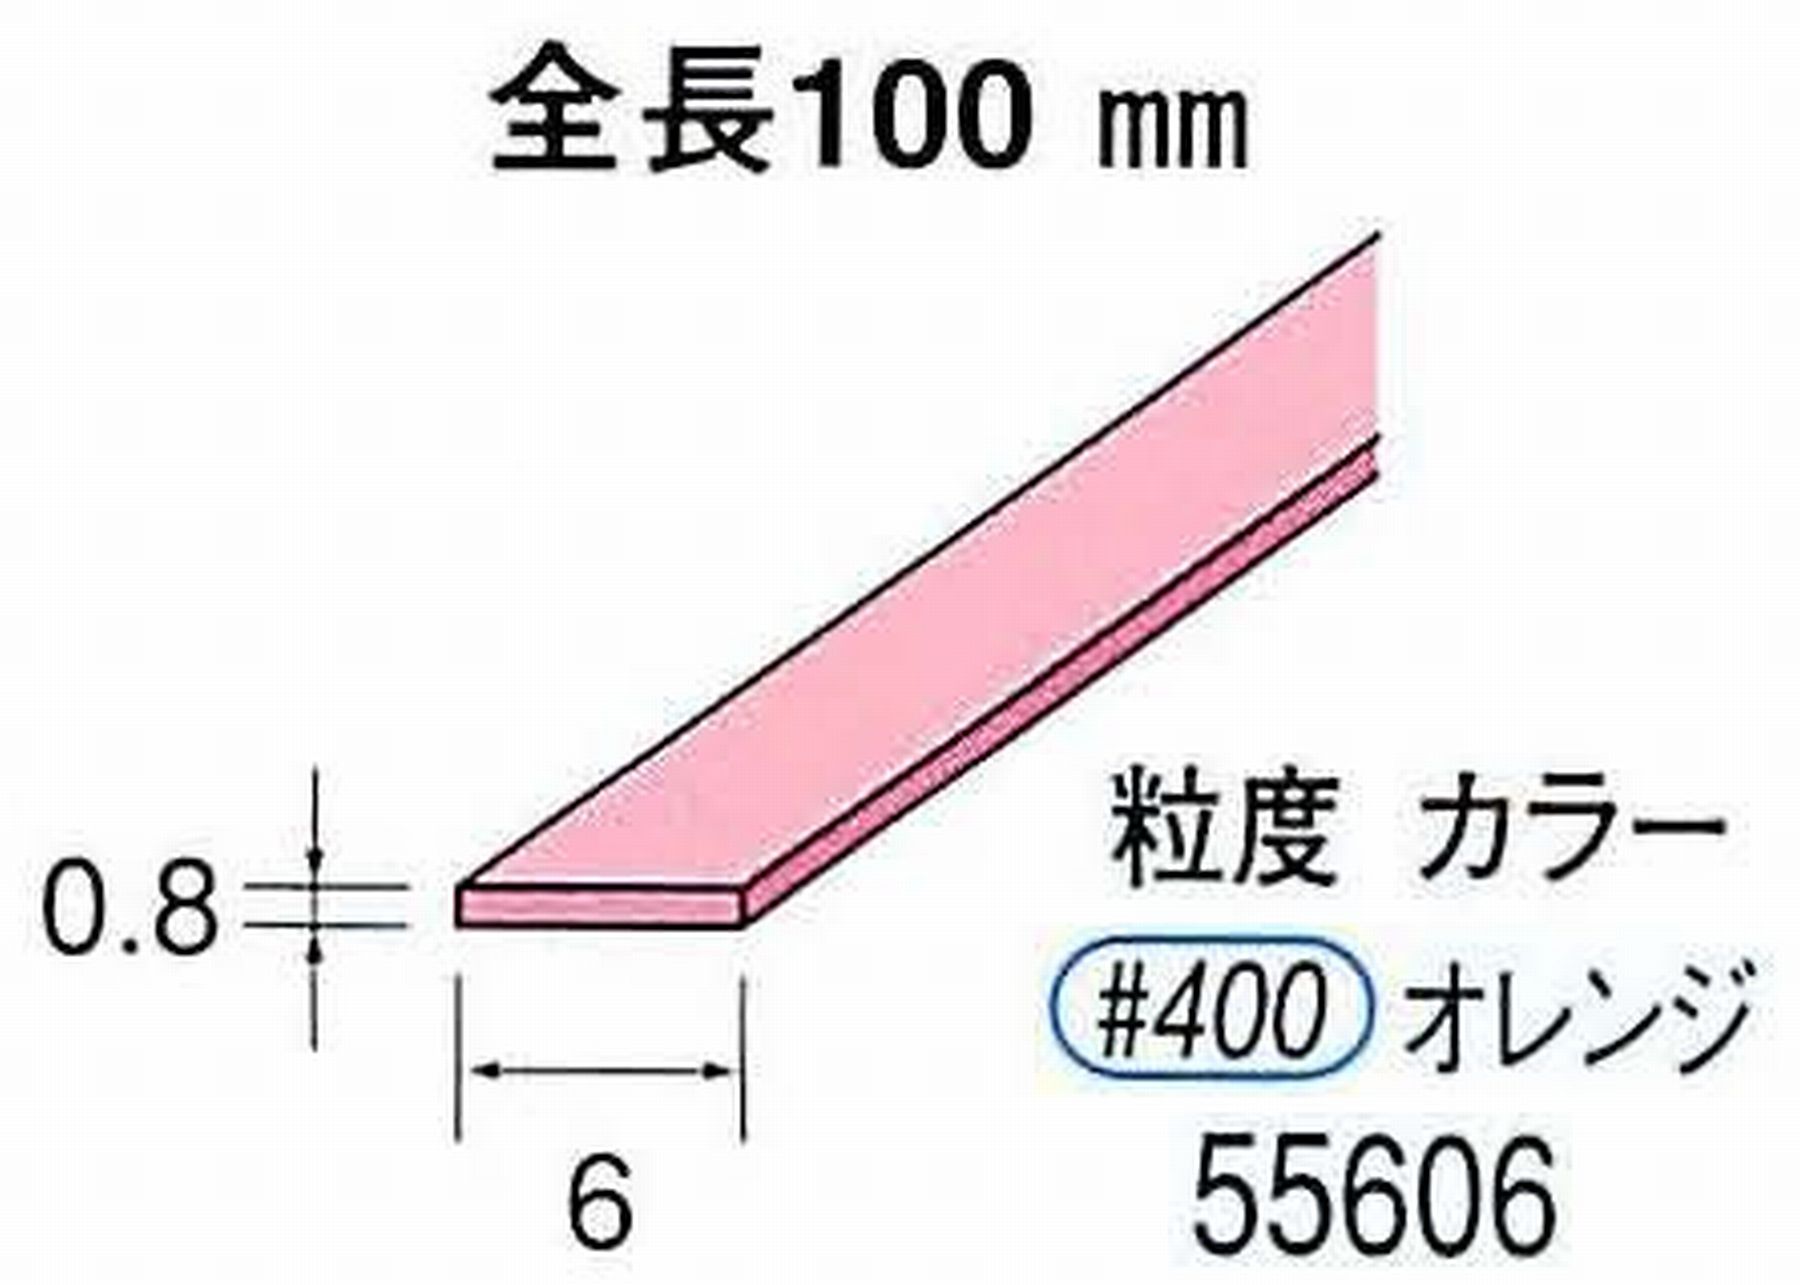 ナカニシ/NAKANISHI セラファイバー砥石 全長100mm オレンジ 55606